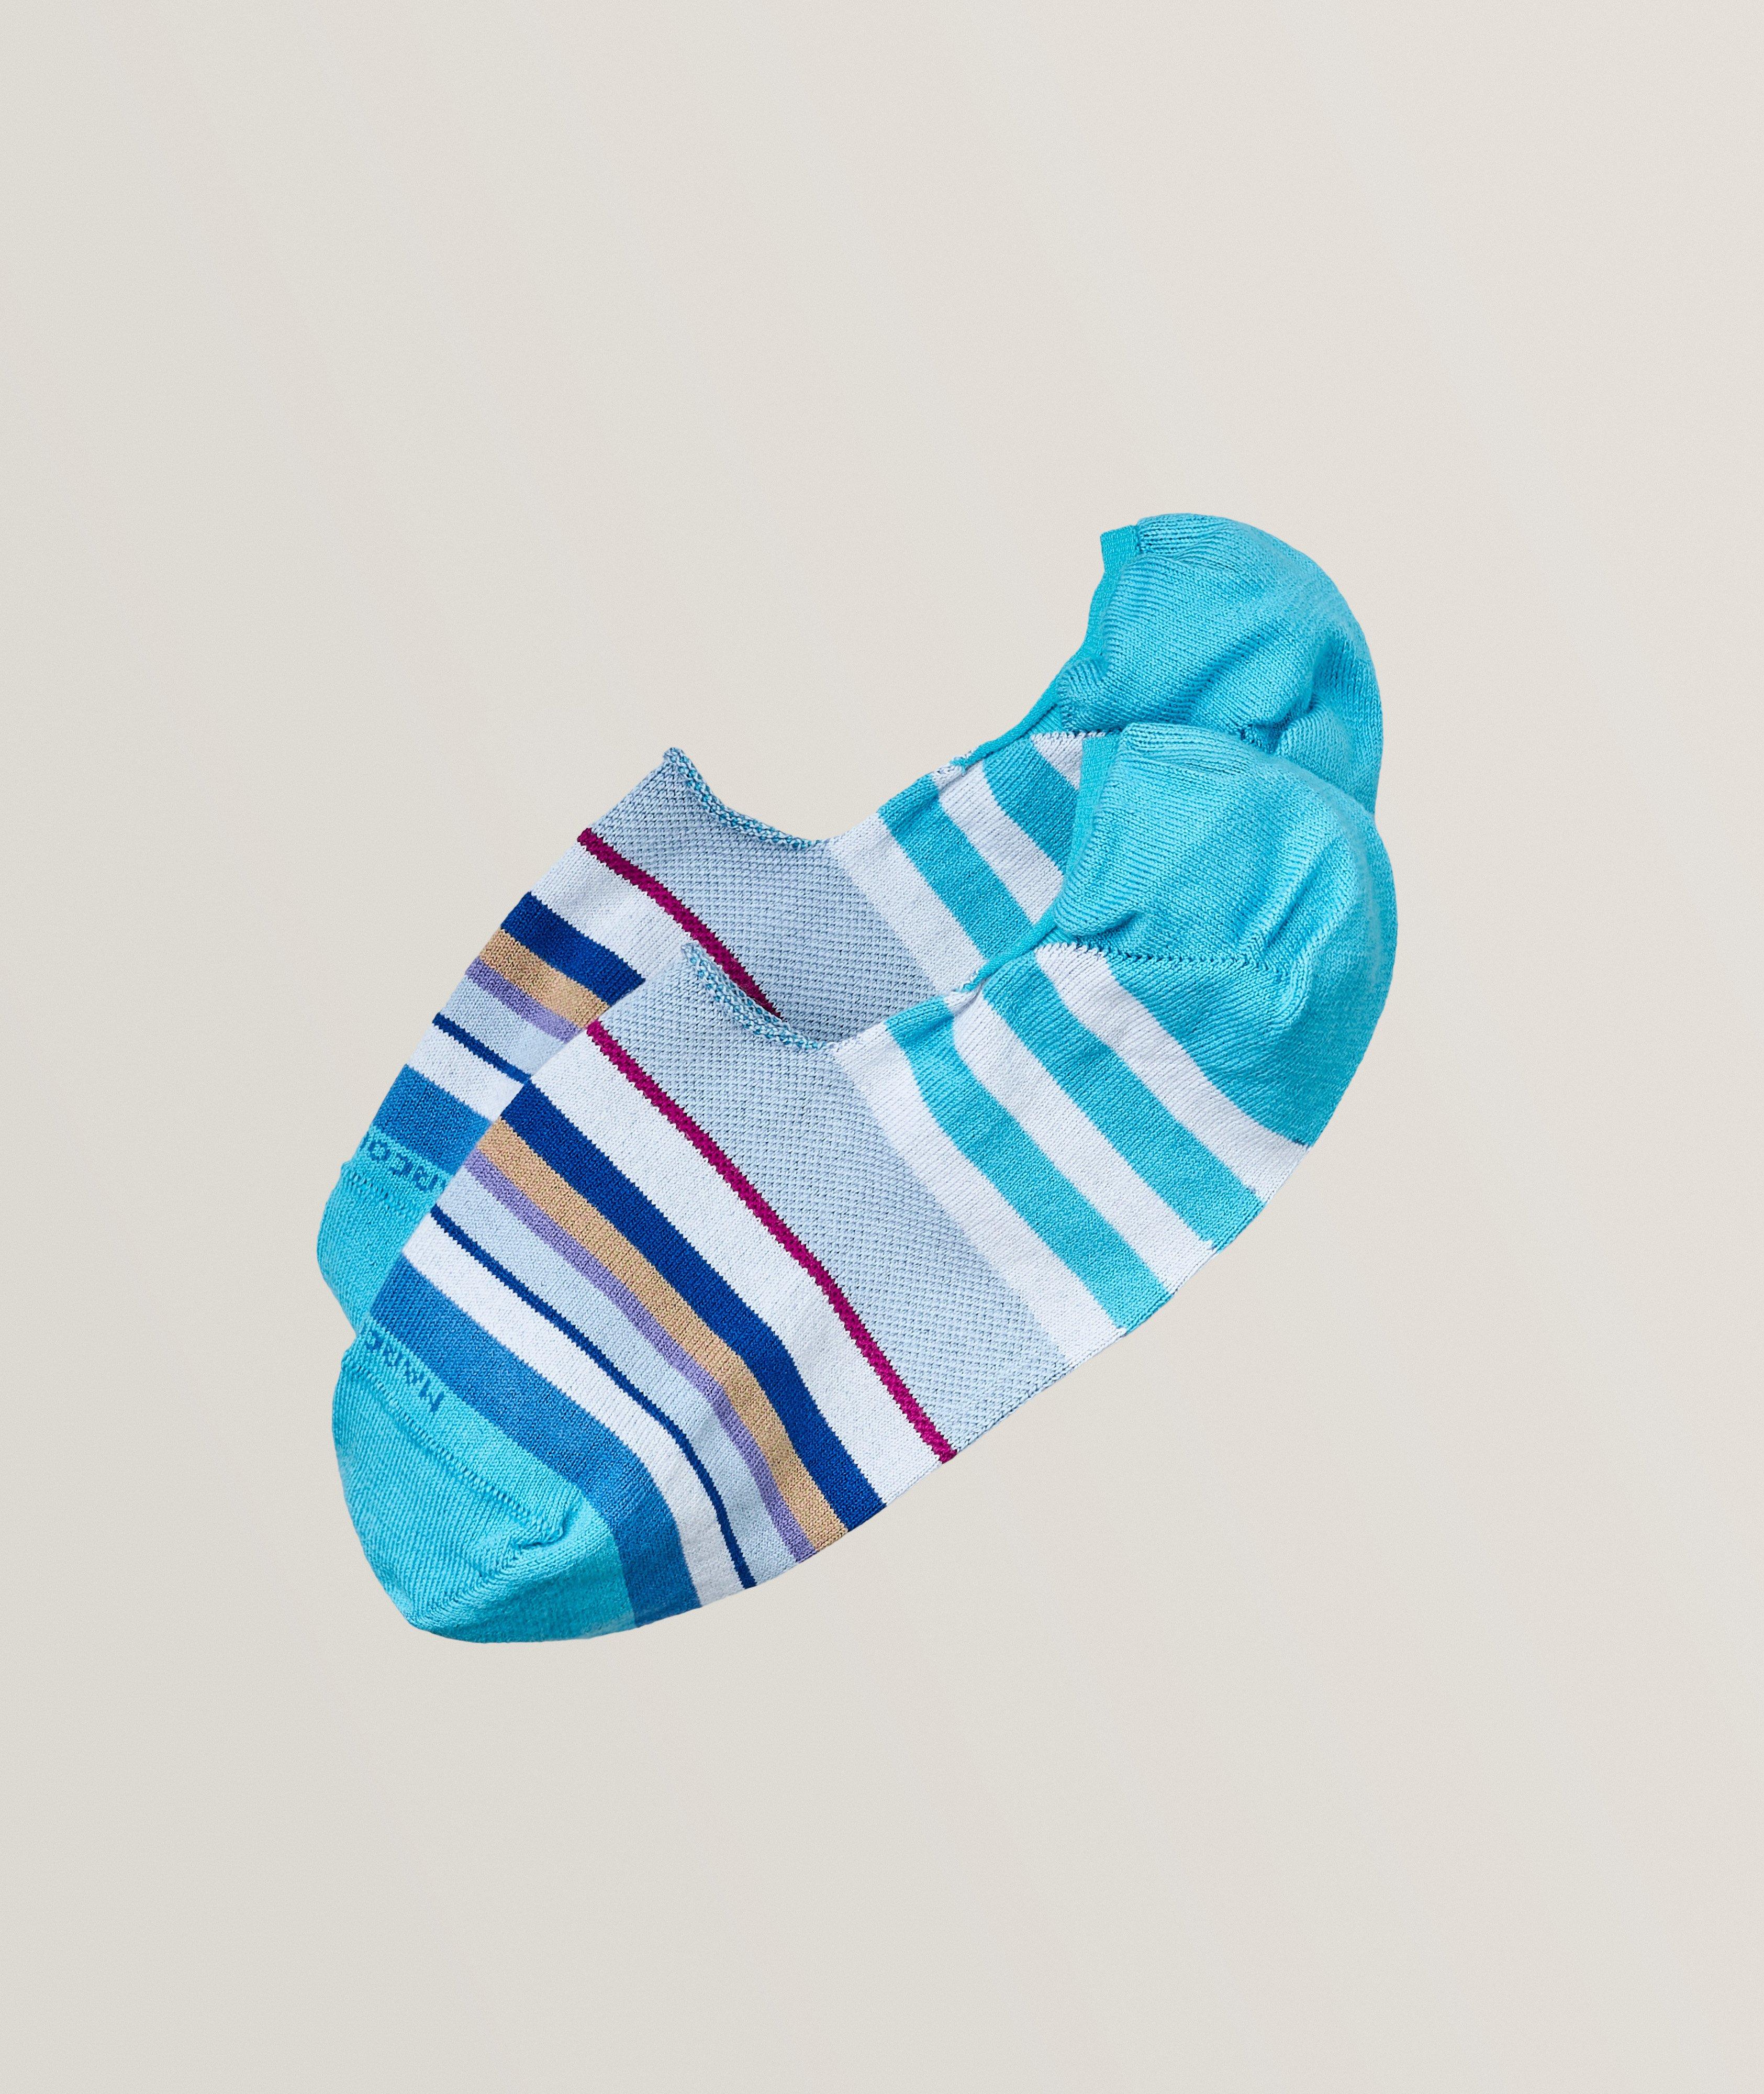 Multicolour Stripe Cotton-Blend No-Show Socks  image 0